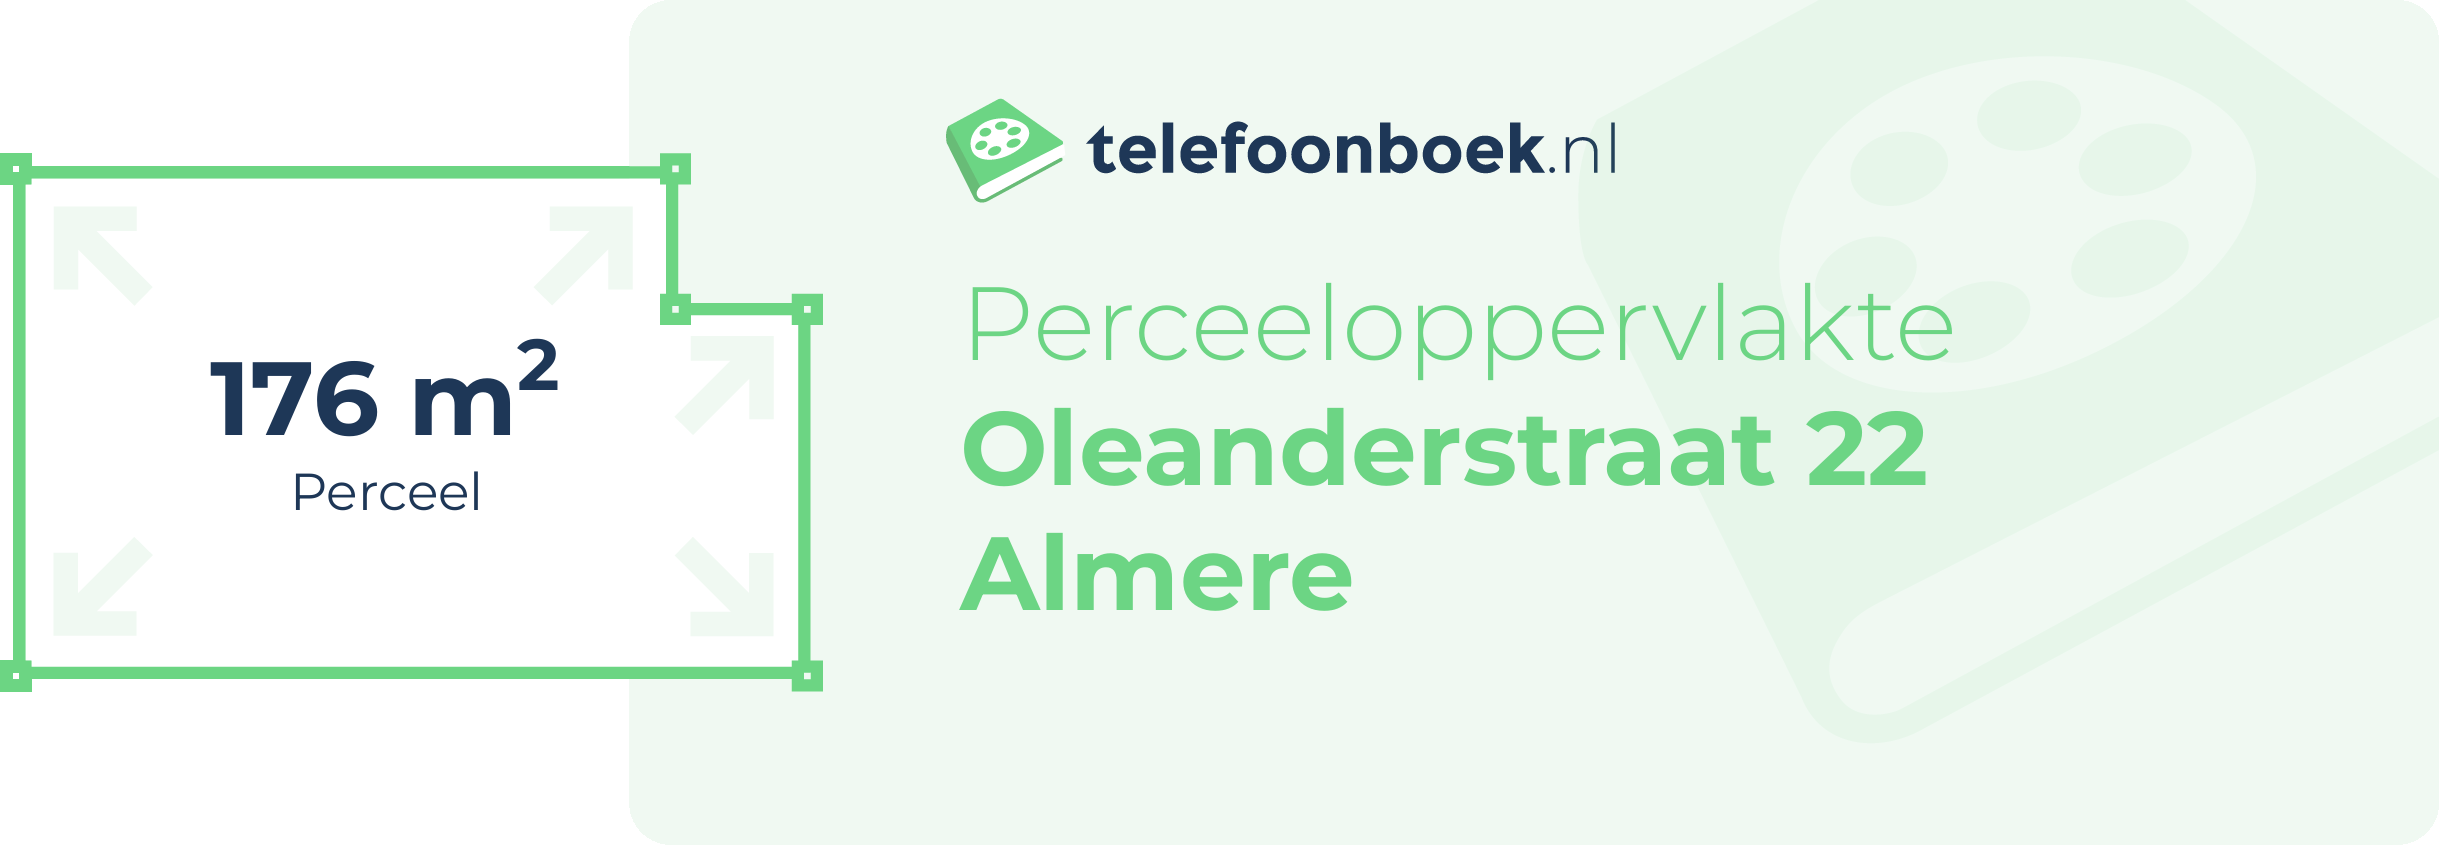 Perceeloppervlakte Oleanderstraat 22 Almere